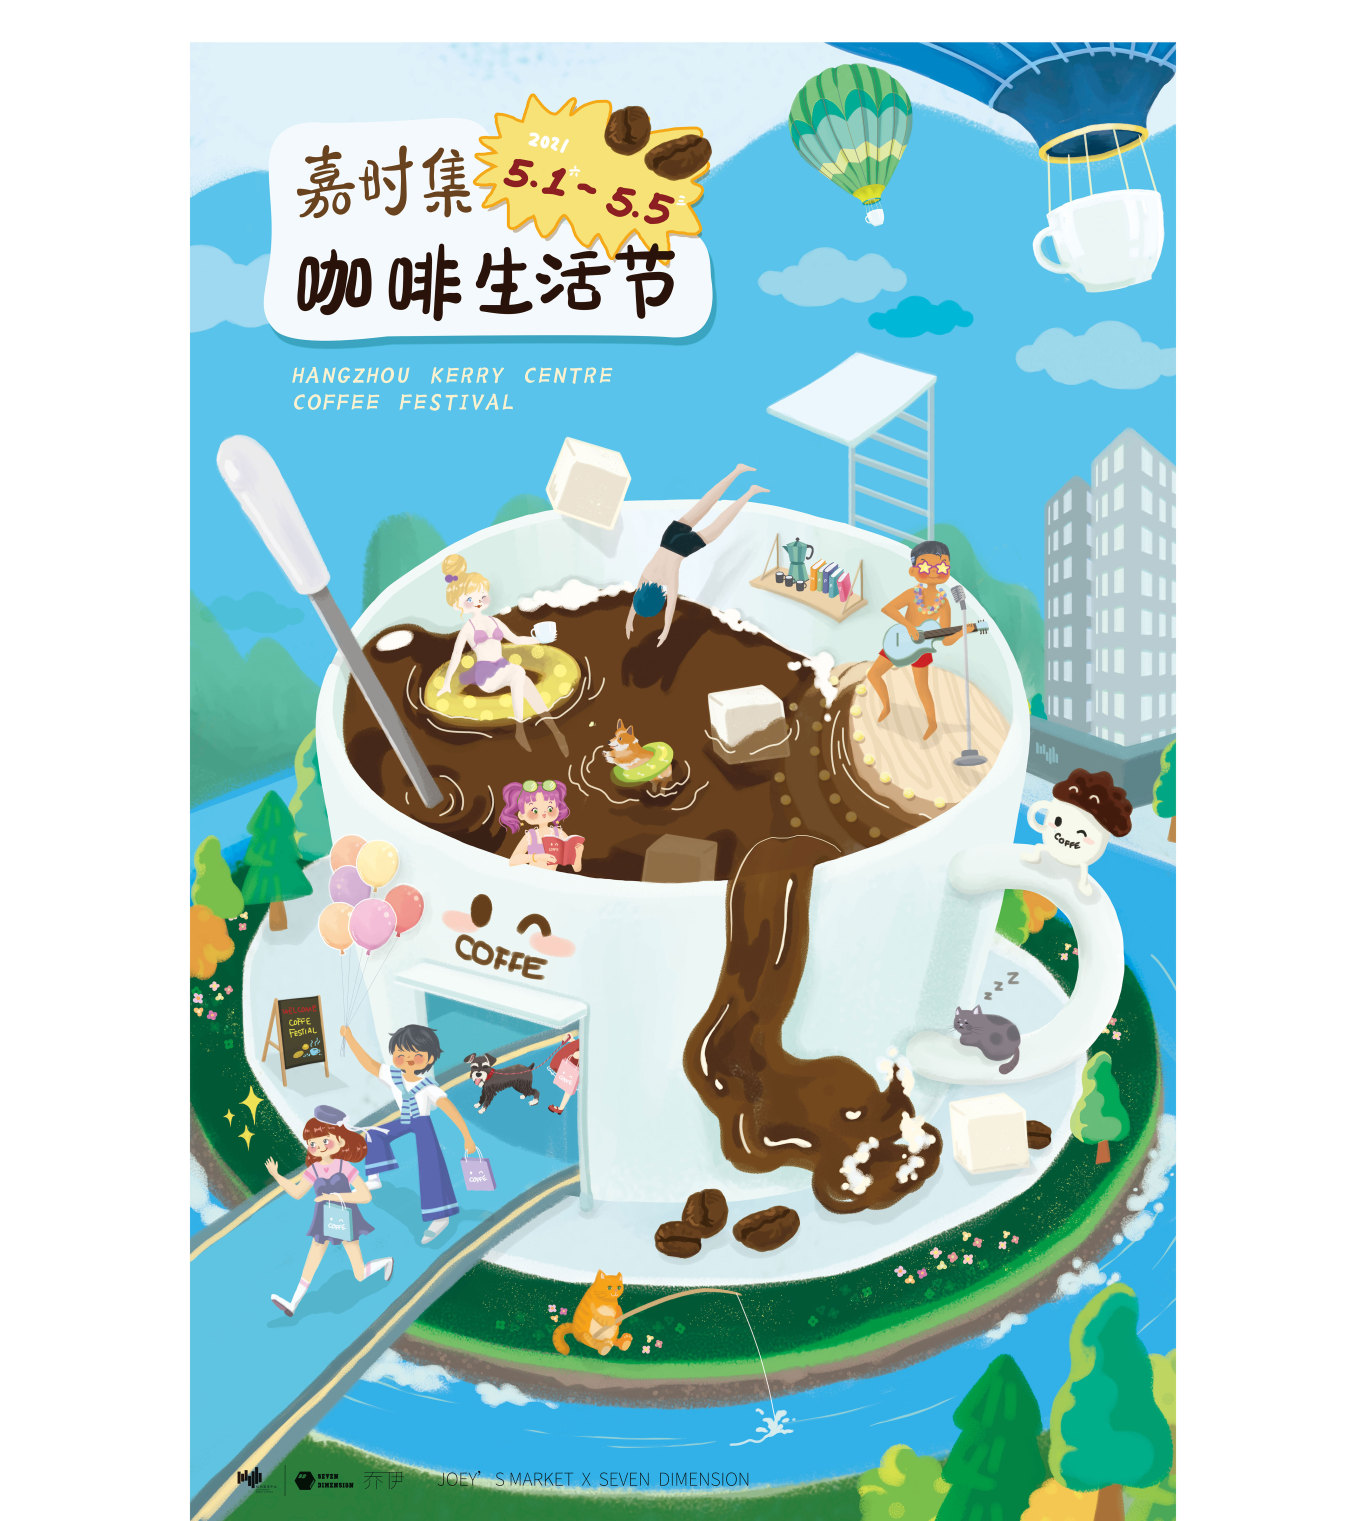 杭州嘉里中心咖啡生活節插畫方案圖0